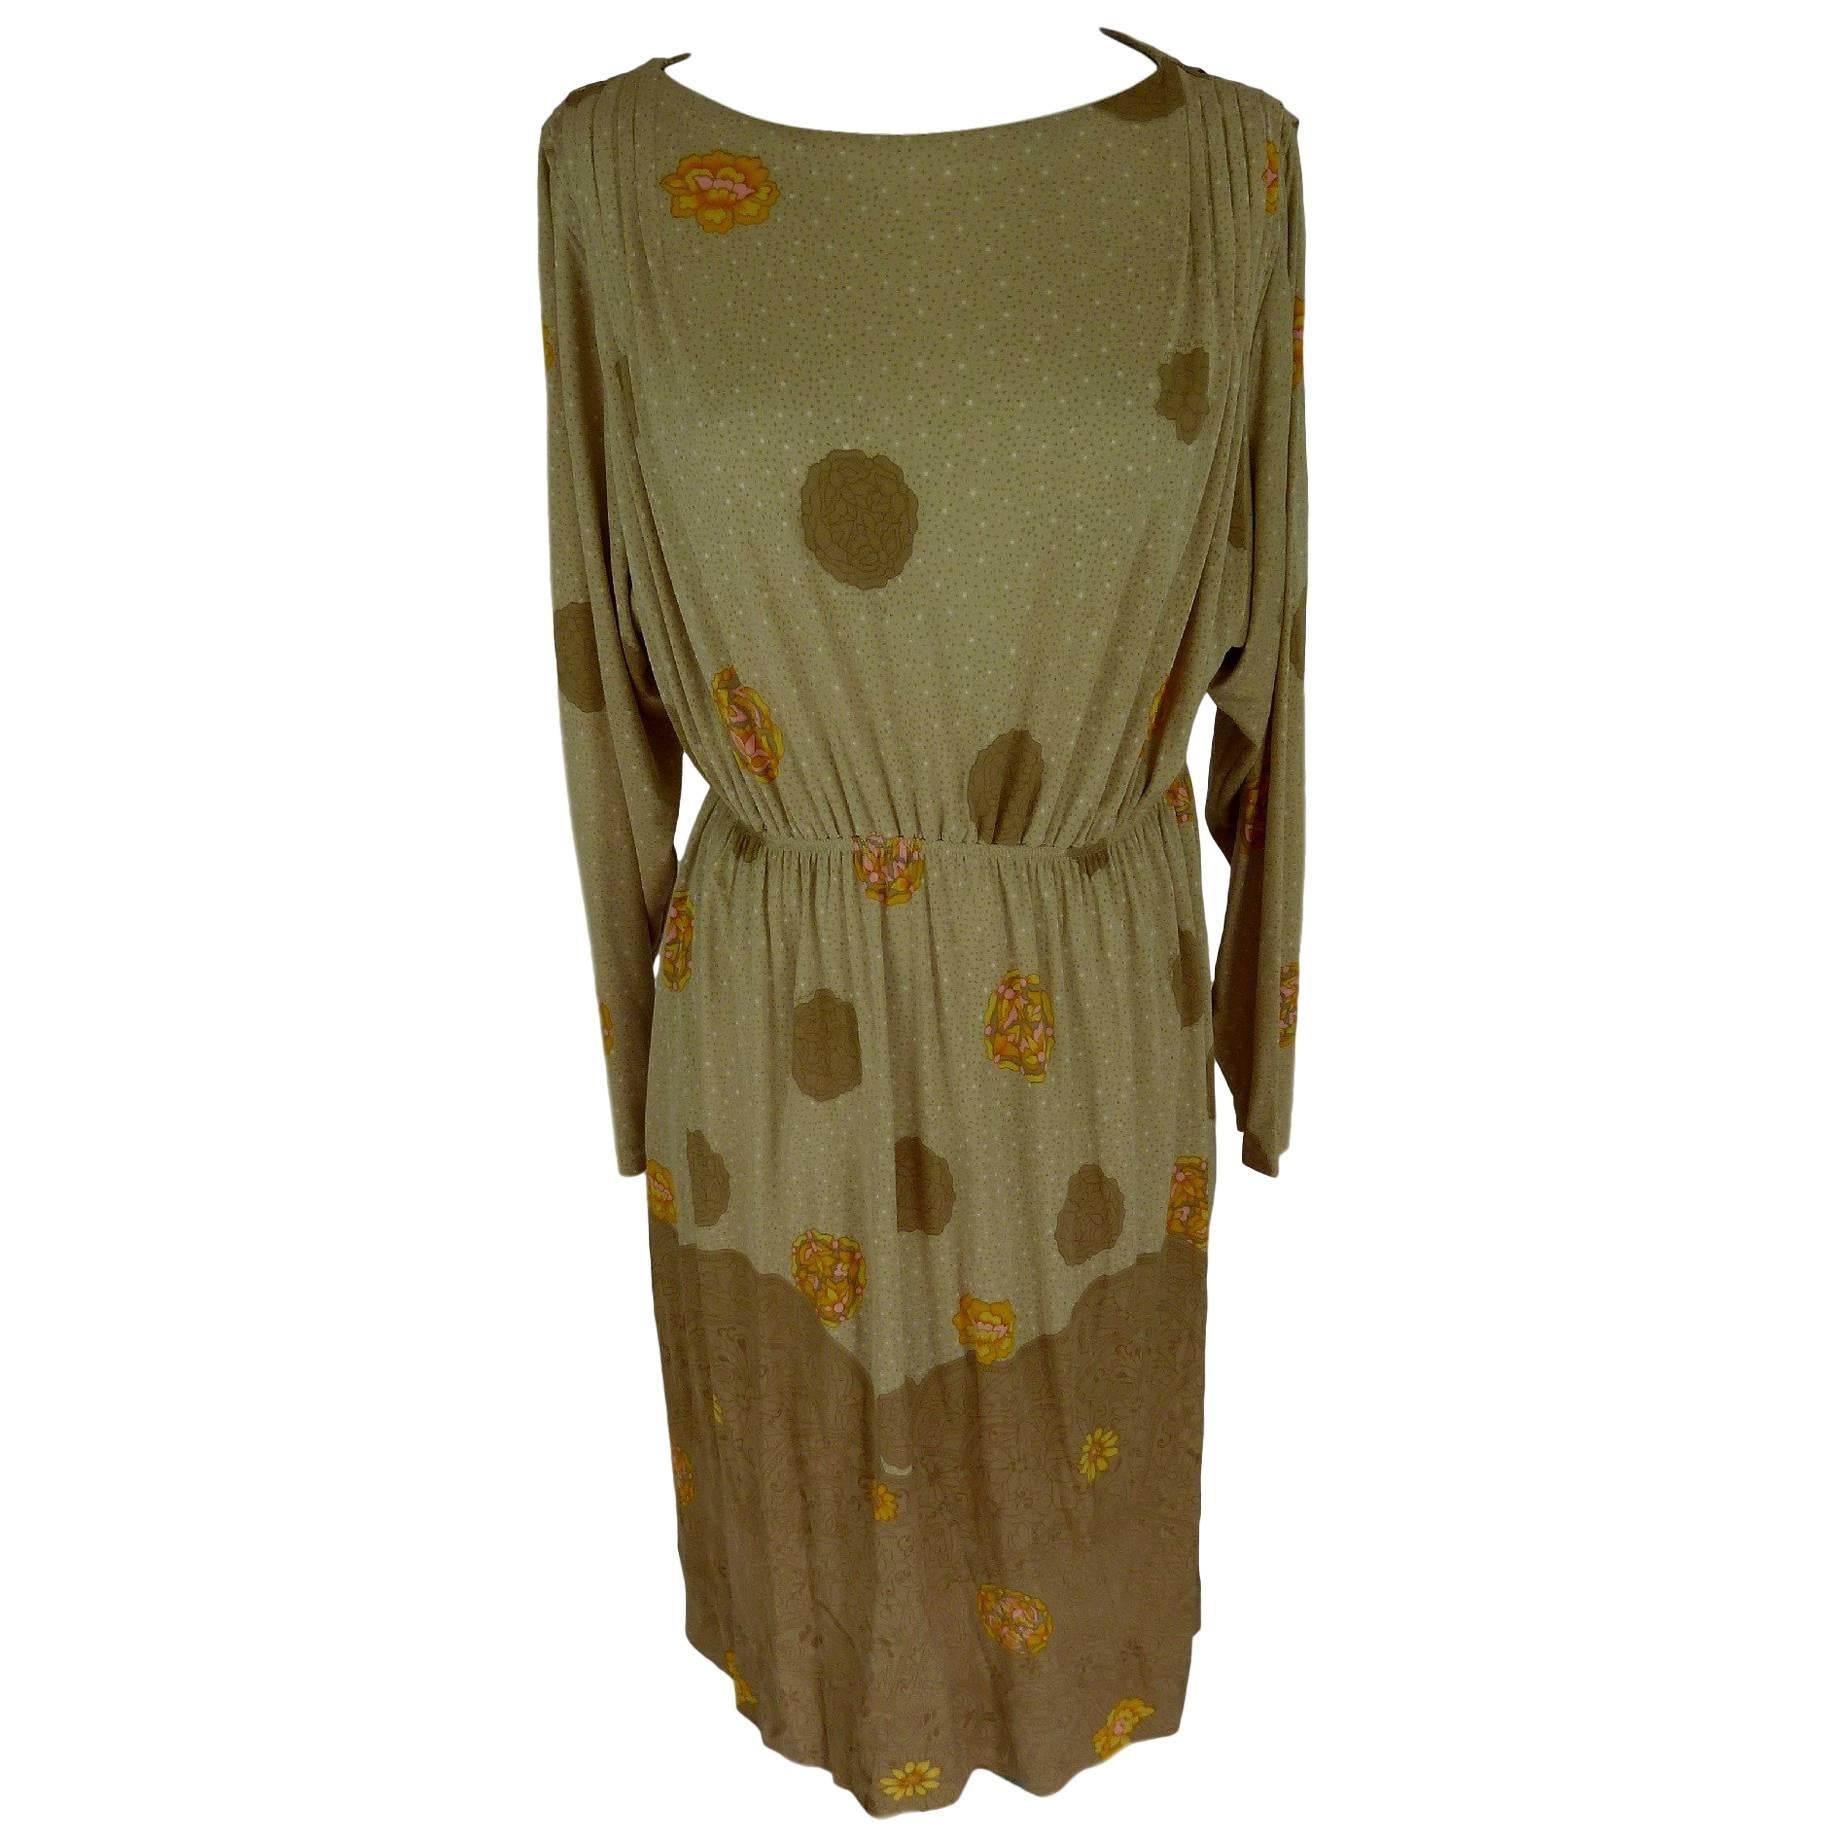 De Parisini 1970s dress floral 100% silk wrap beige women's size 12 UK vintage